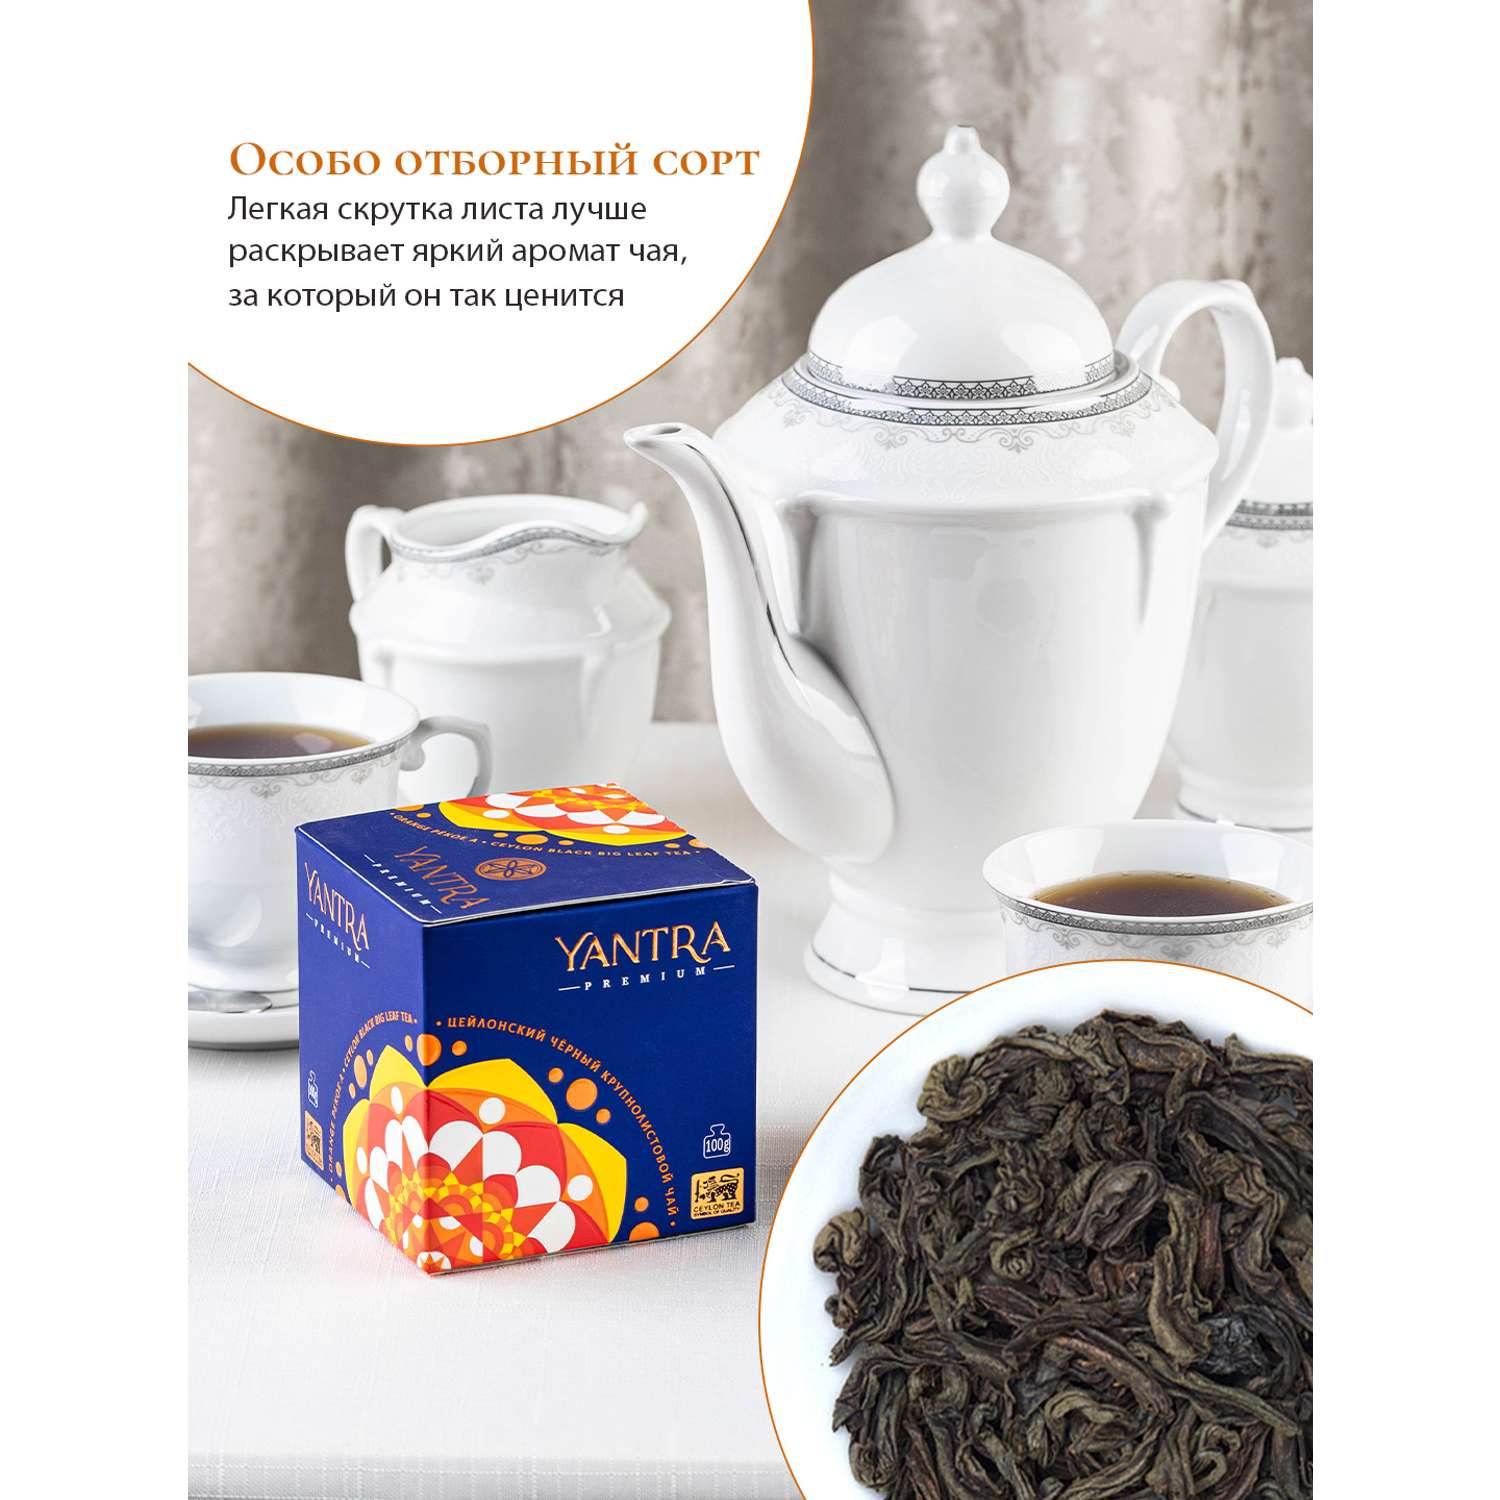 Чай Премиум Yantra чёрный крупнолистовой стандарт OPA 100 г - фото 4